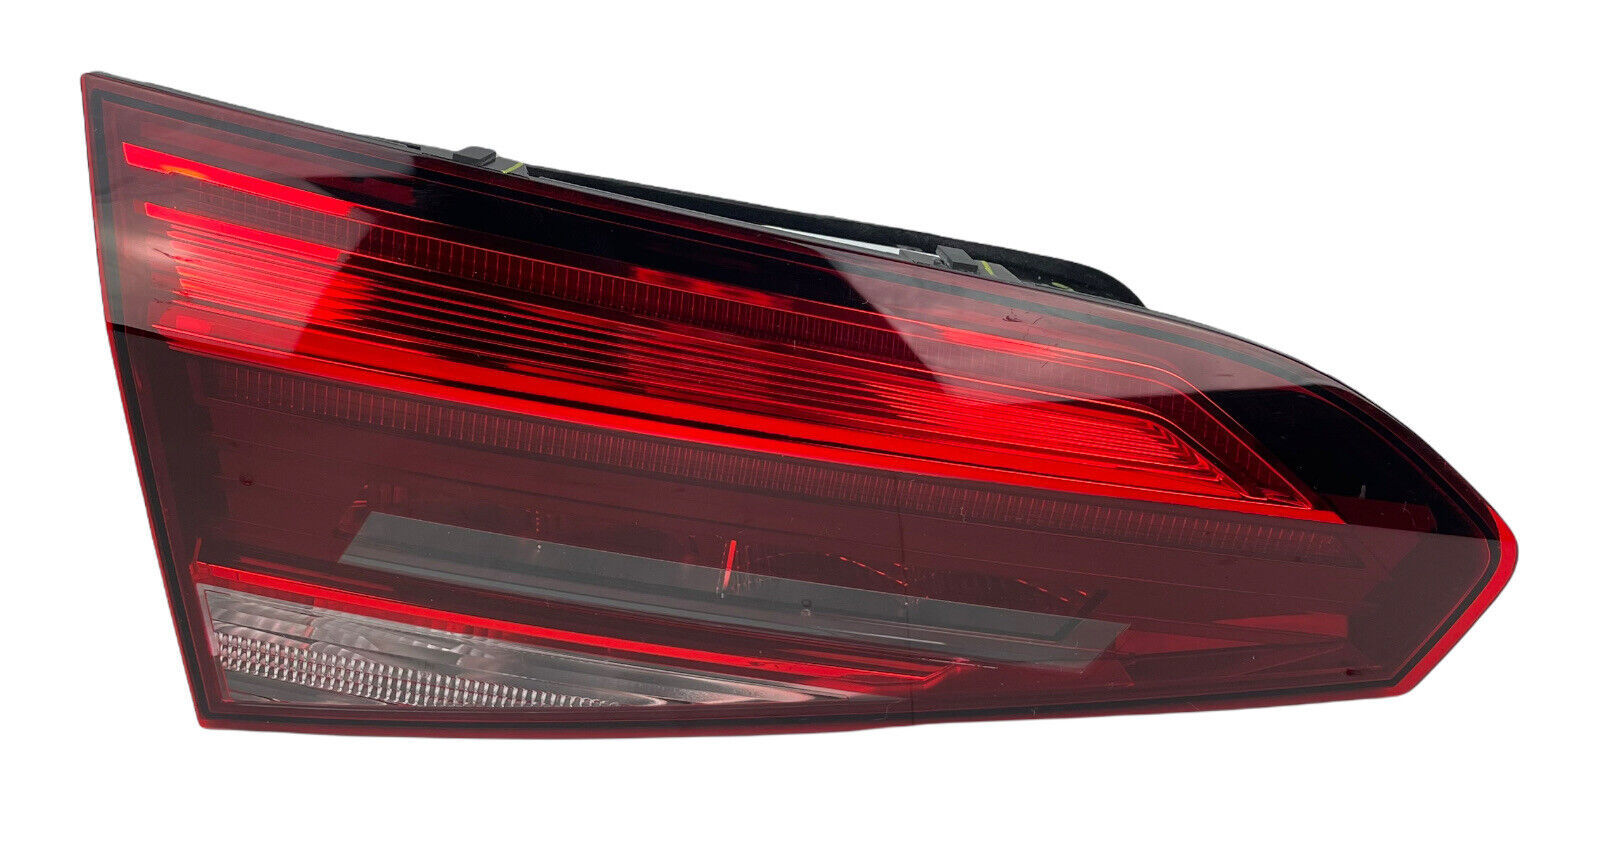 Primary image for 2020 2021 OEM VW Volkswagen Passat Rear Inner Tail Light W Rear Fog Light Left